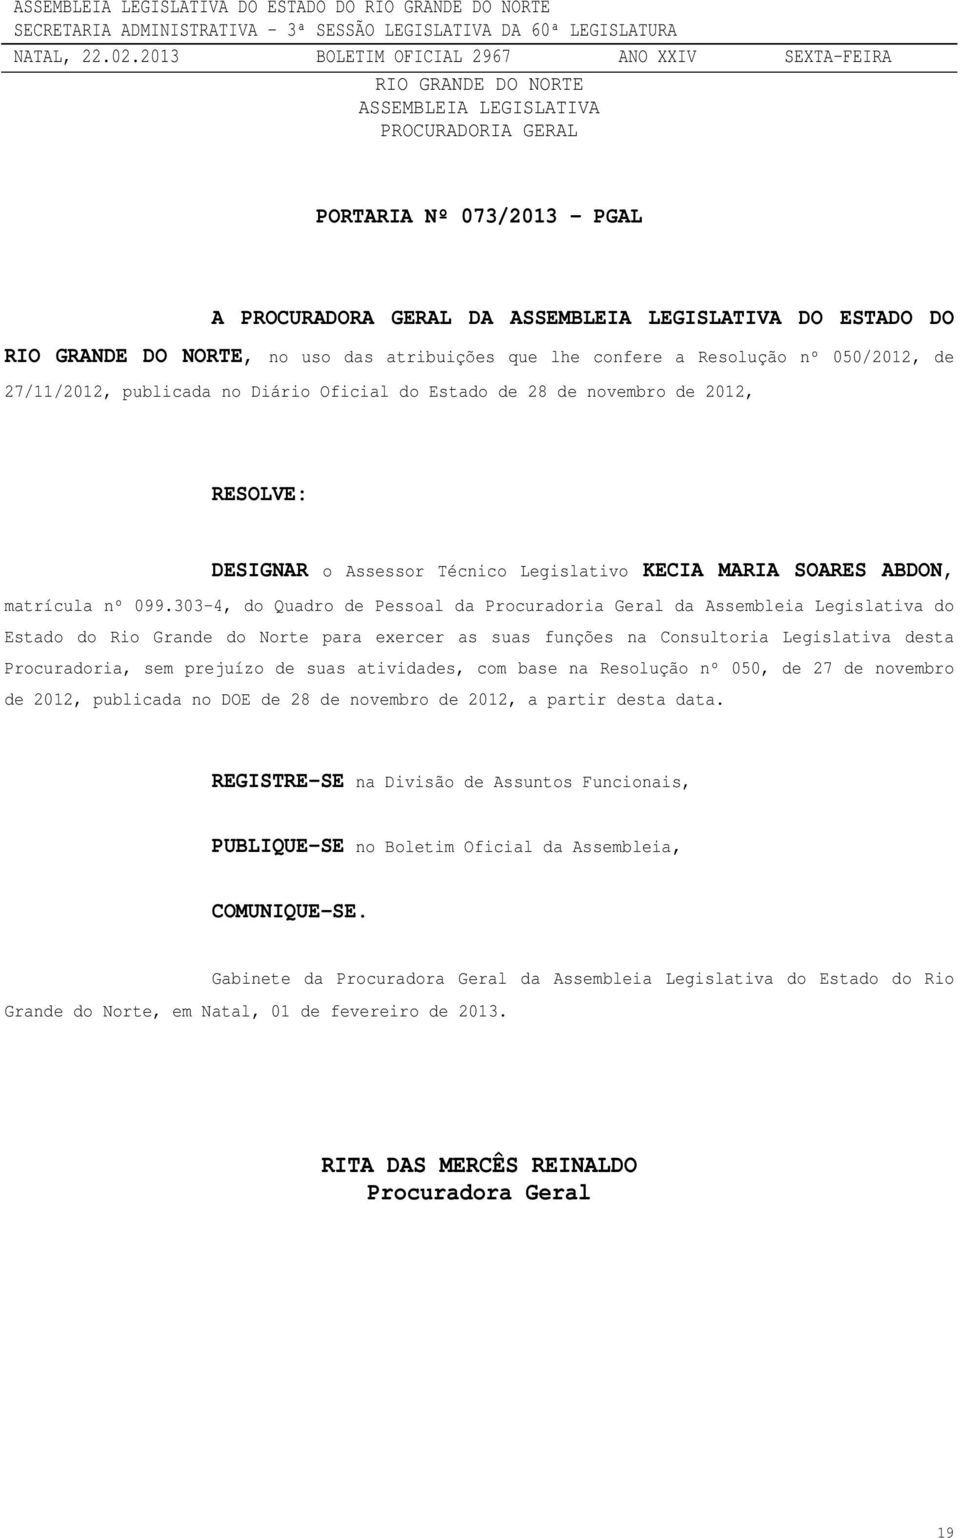 303-4, do Quadro de Pessoal da Procuradoria Geral da Assembleia Legislativa do Estado do Rio Grande do Norte para exercer as suas funções